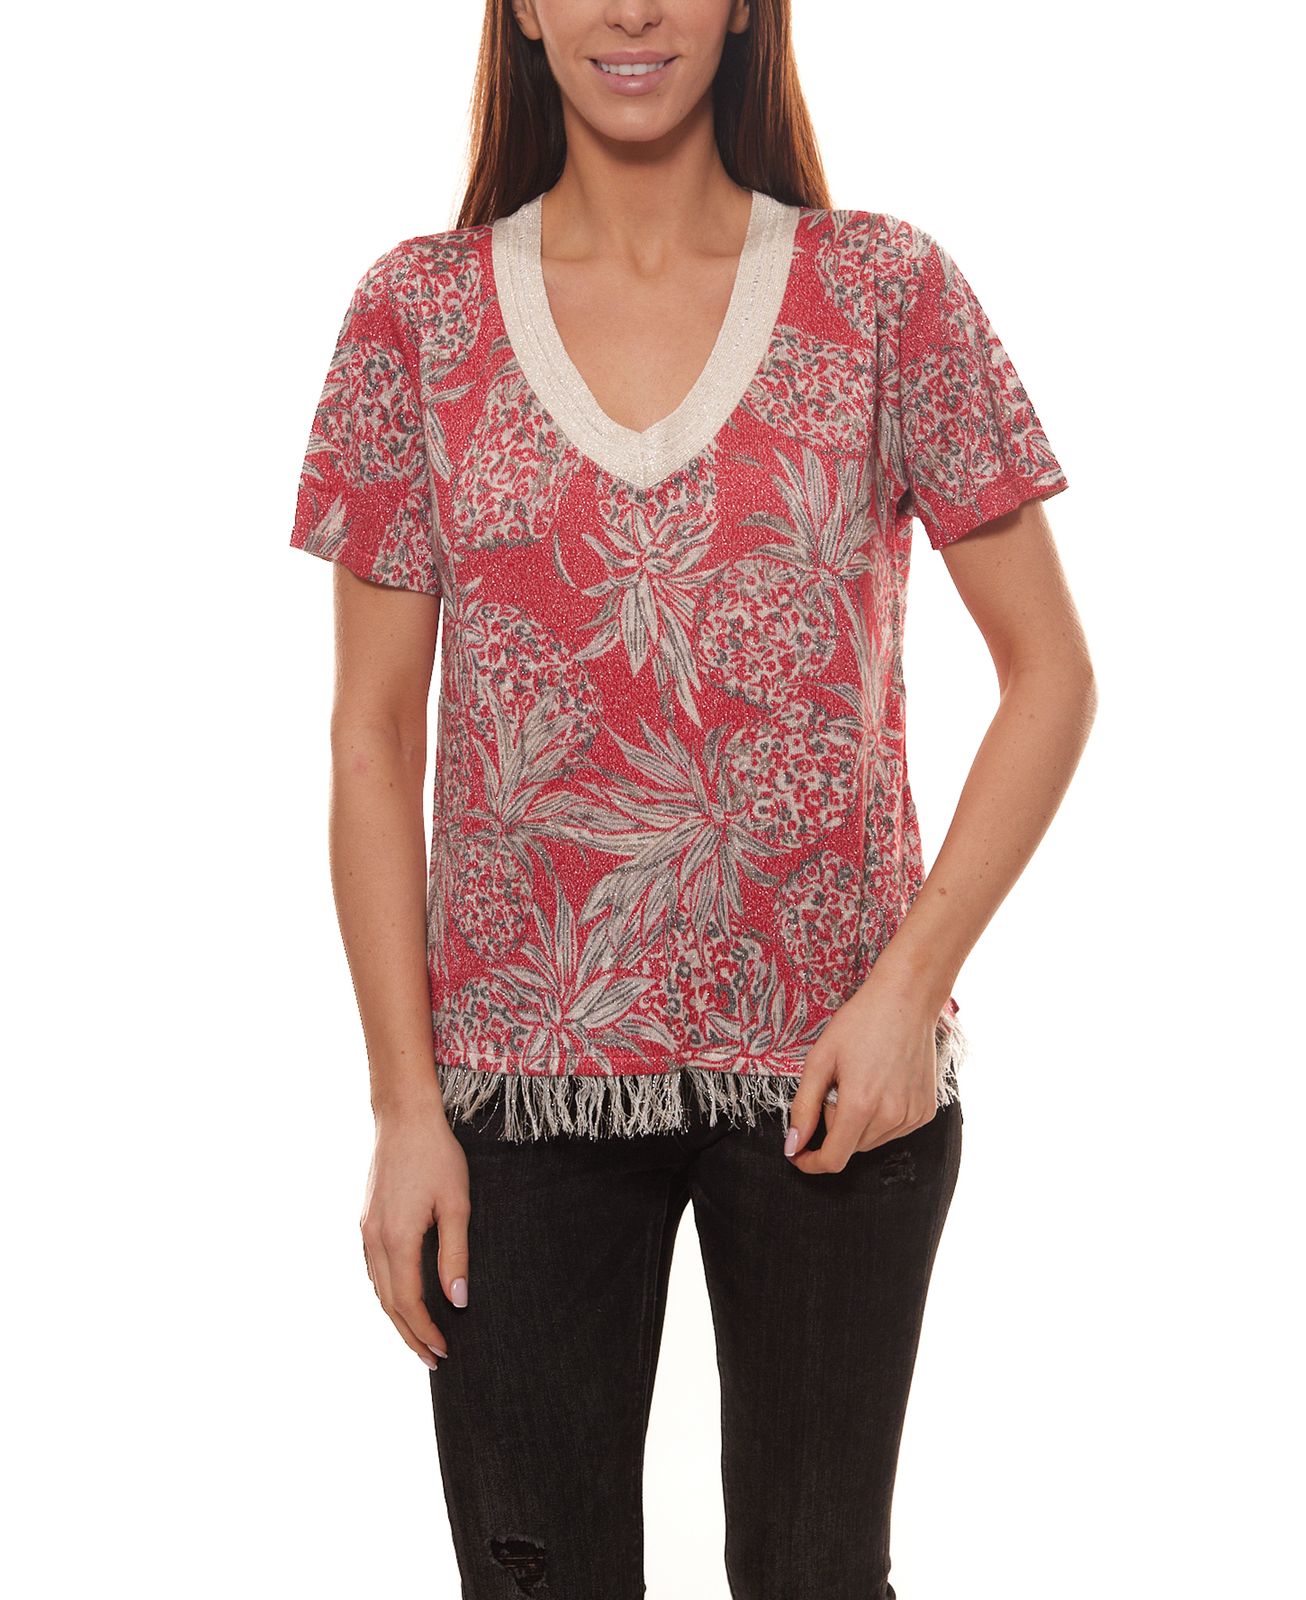 TUZZI Strick-Shirt modisches Damen Fransen-Shirt mit Ananas-Druck Rot/Weiß von TUZZI